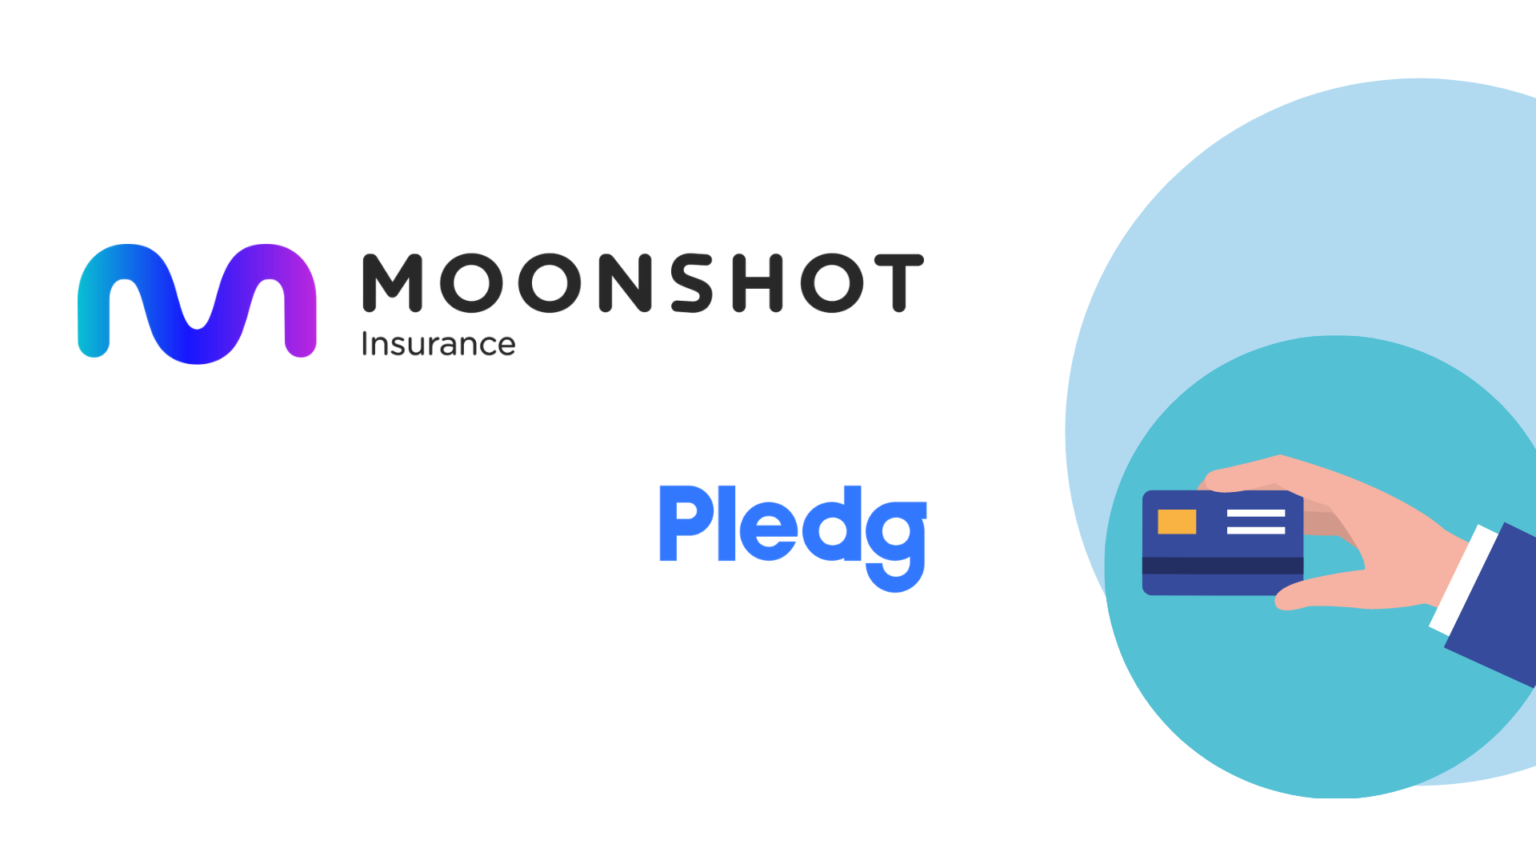 Moonshot Insurance assure les paiements de Pledg